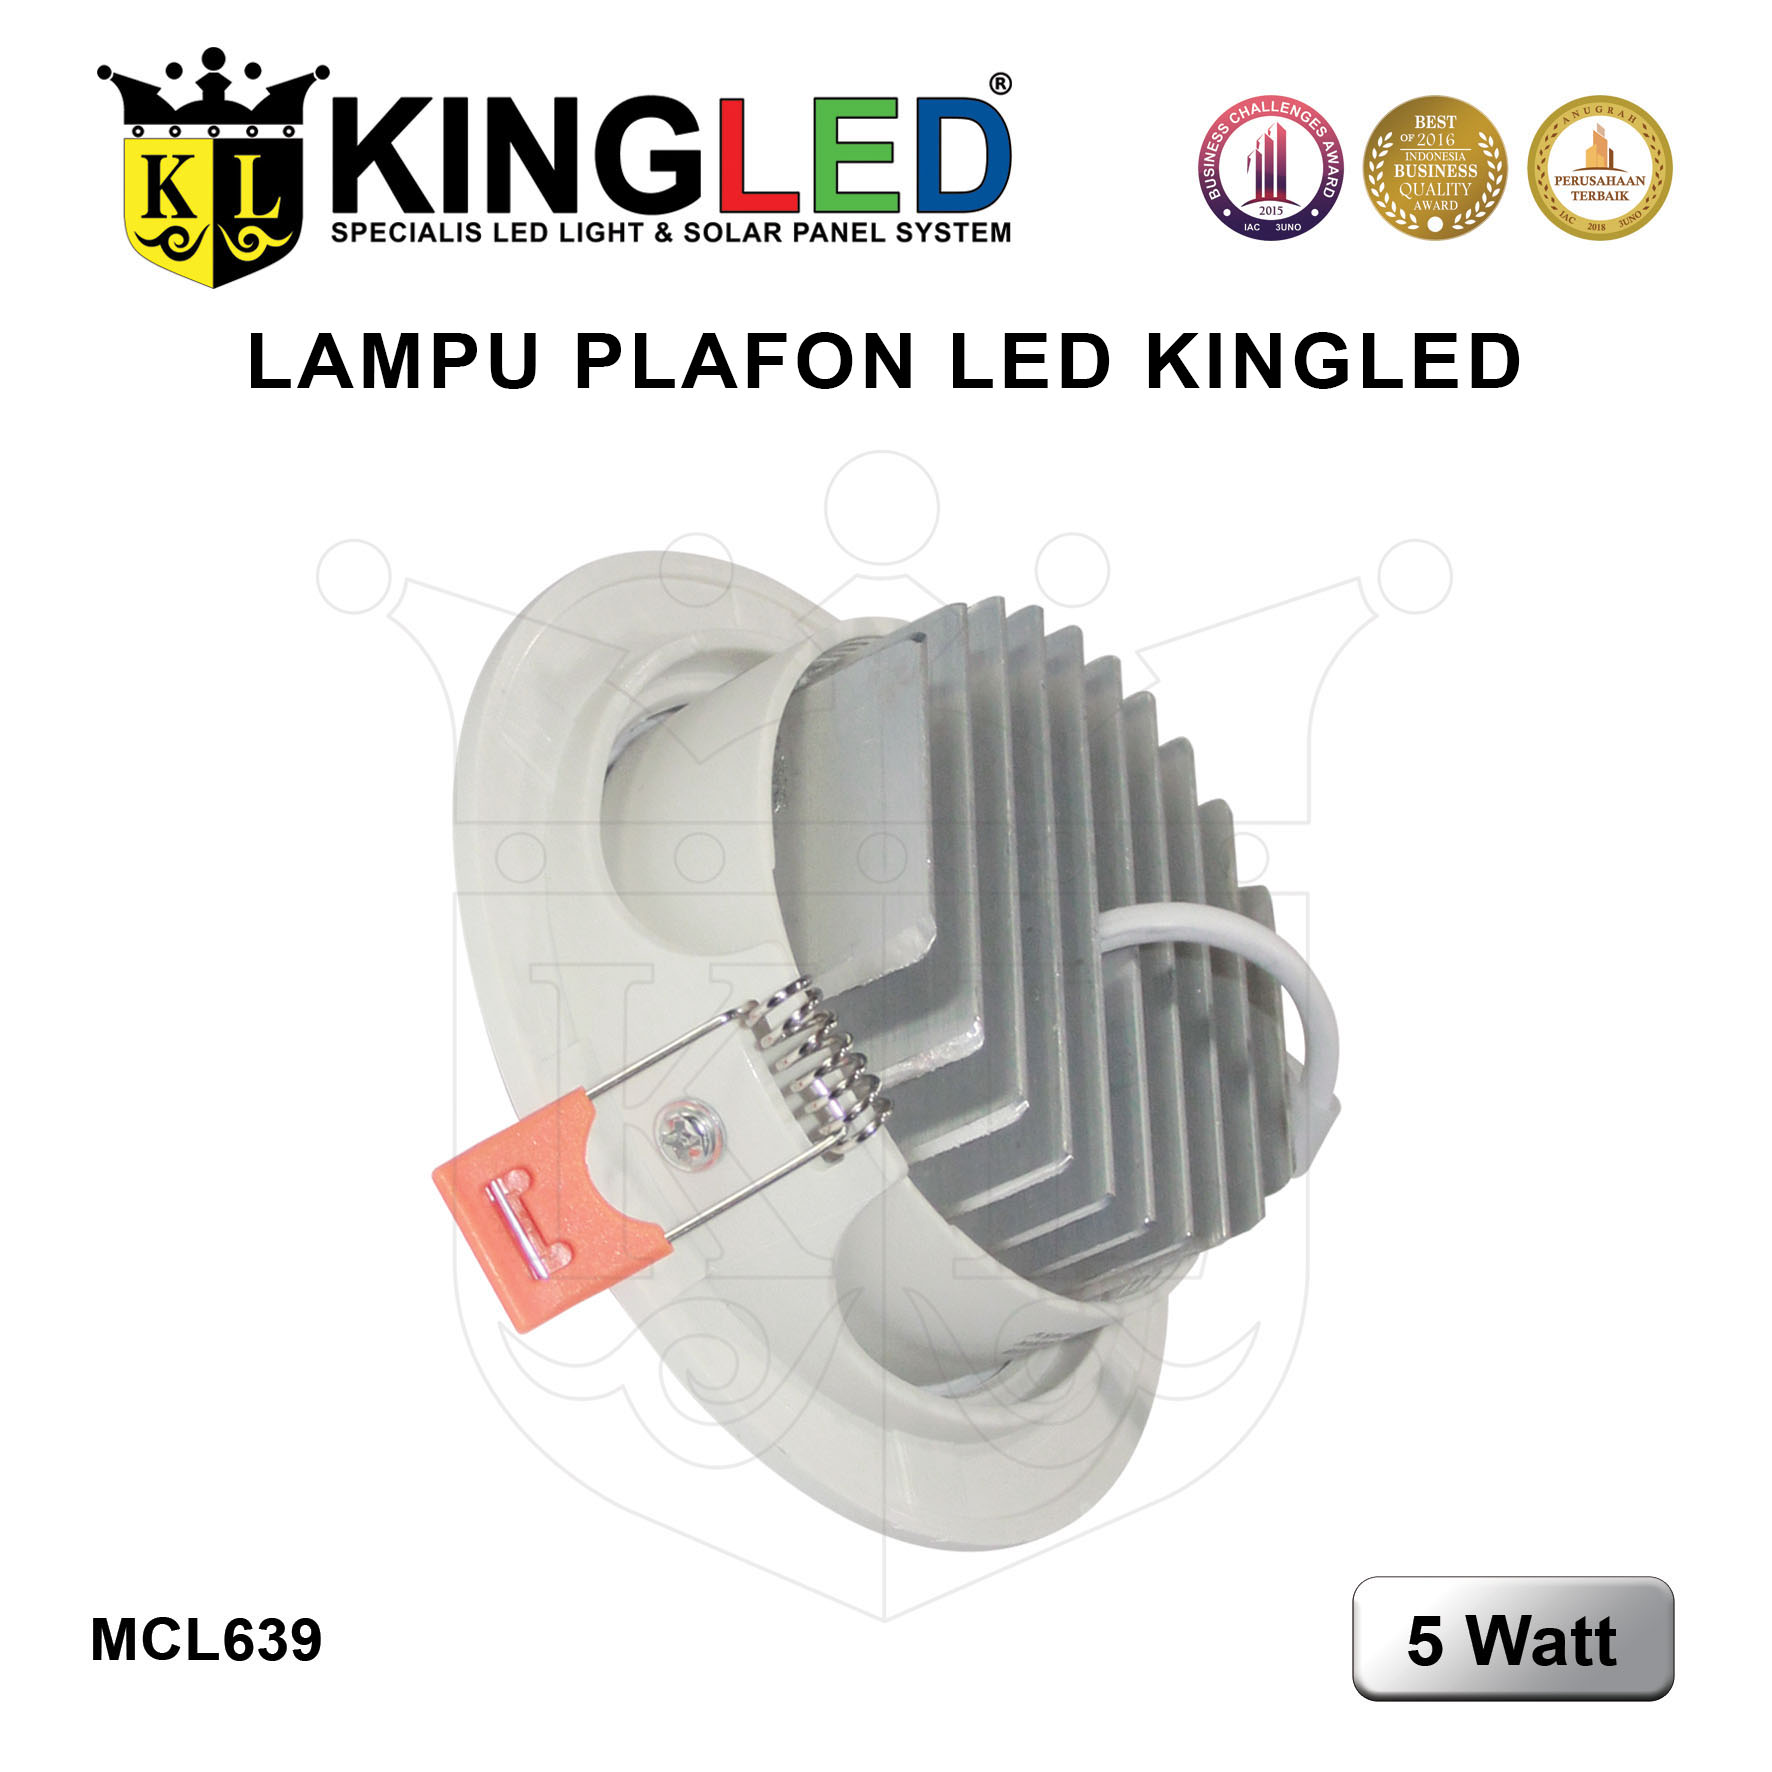 Lampu Plafon LED 5 Watt / LED DownLight 5 Watt